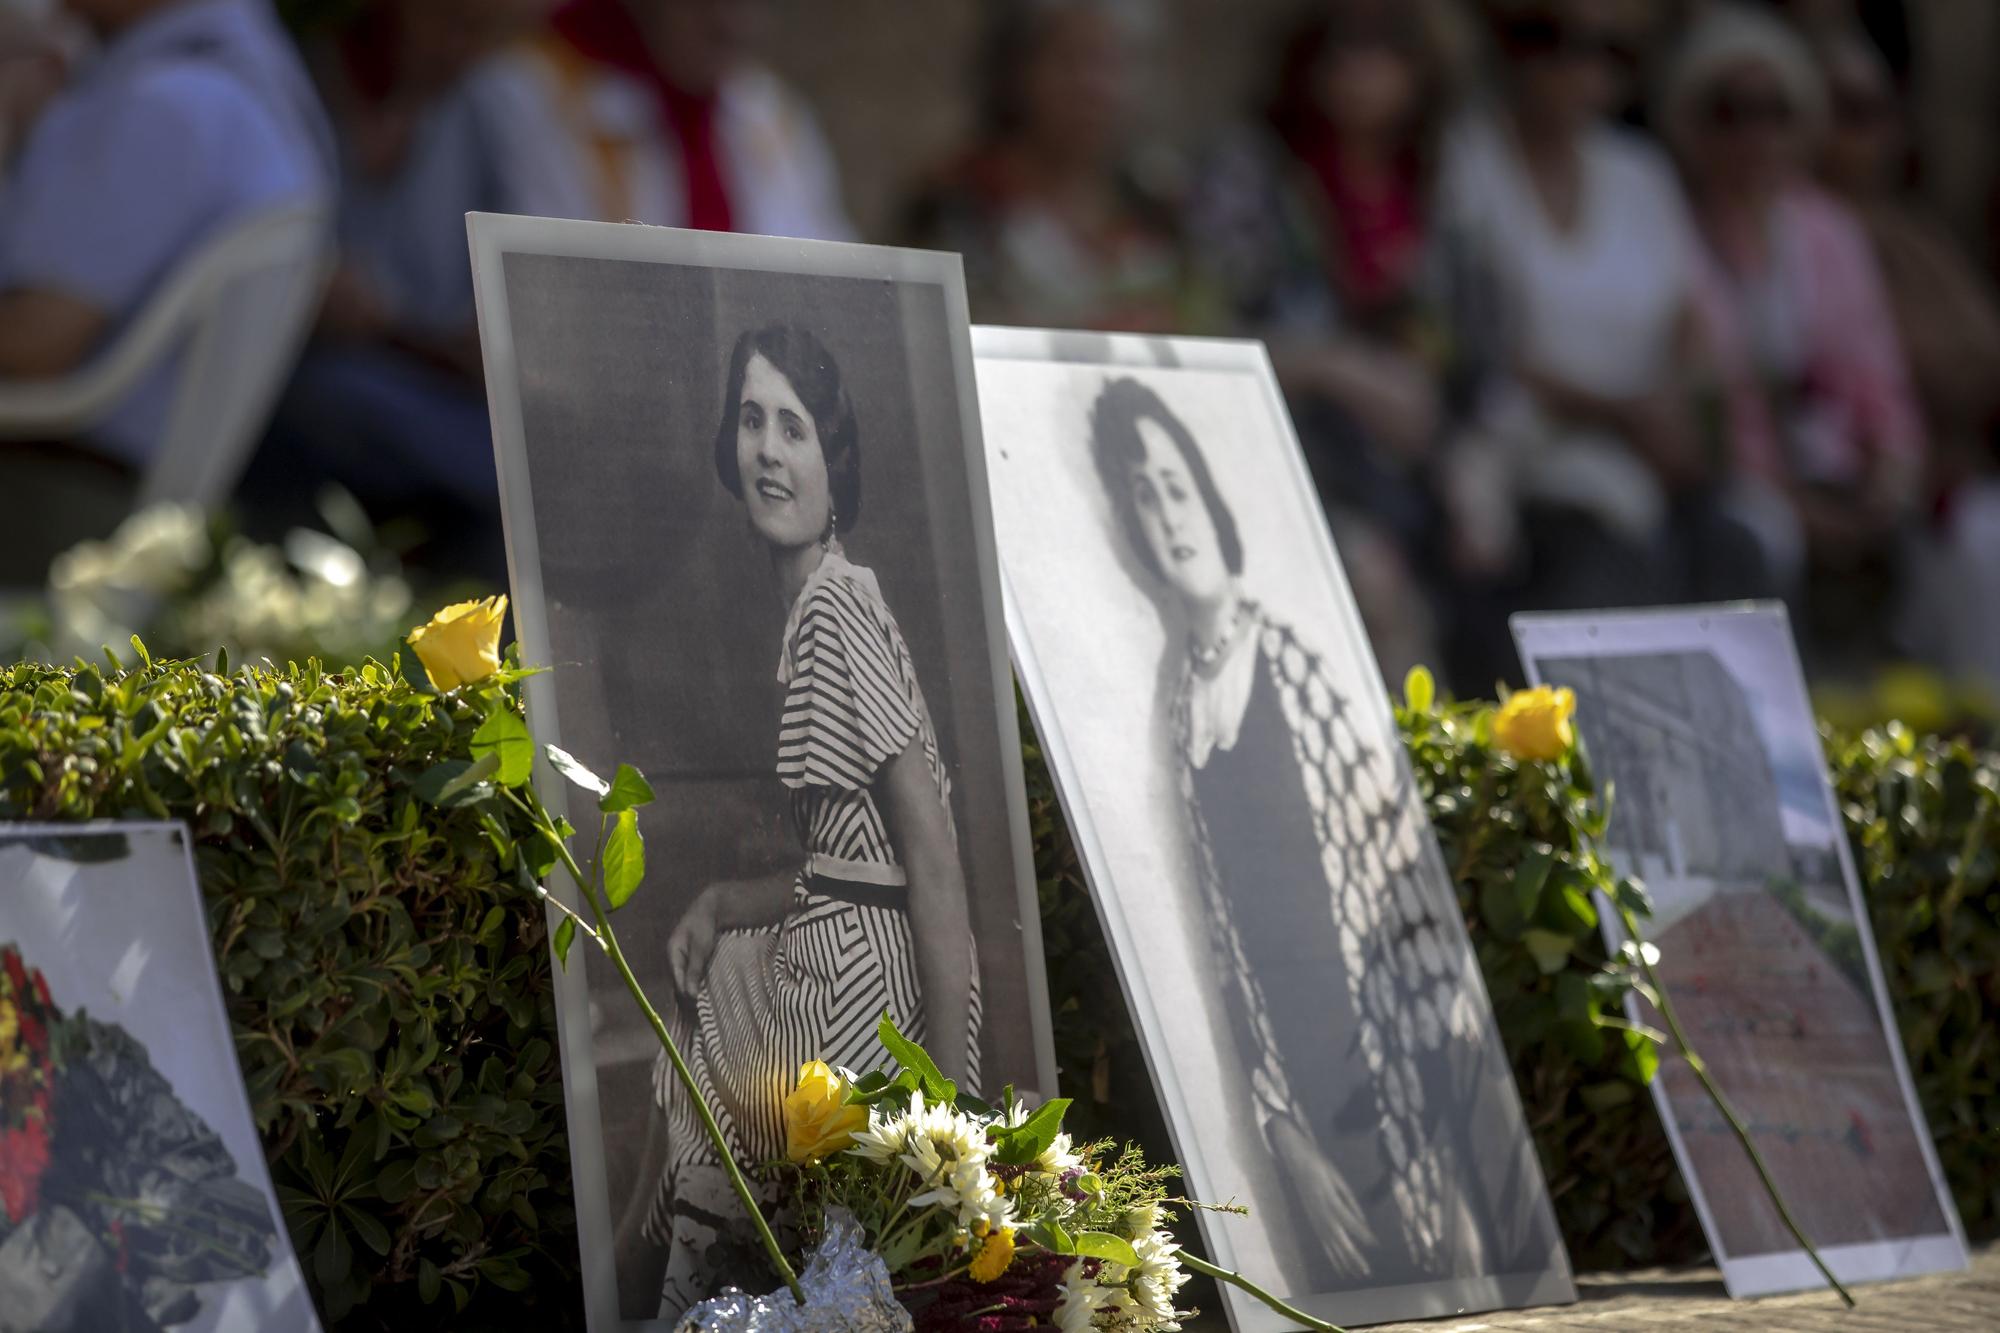 Homenaje a Aurora Picornell y las 'Roges del Molinar' en el cementerio de Palma